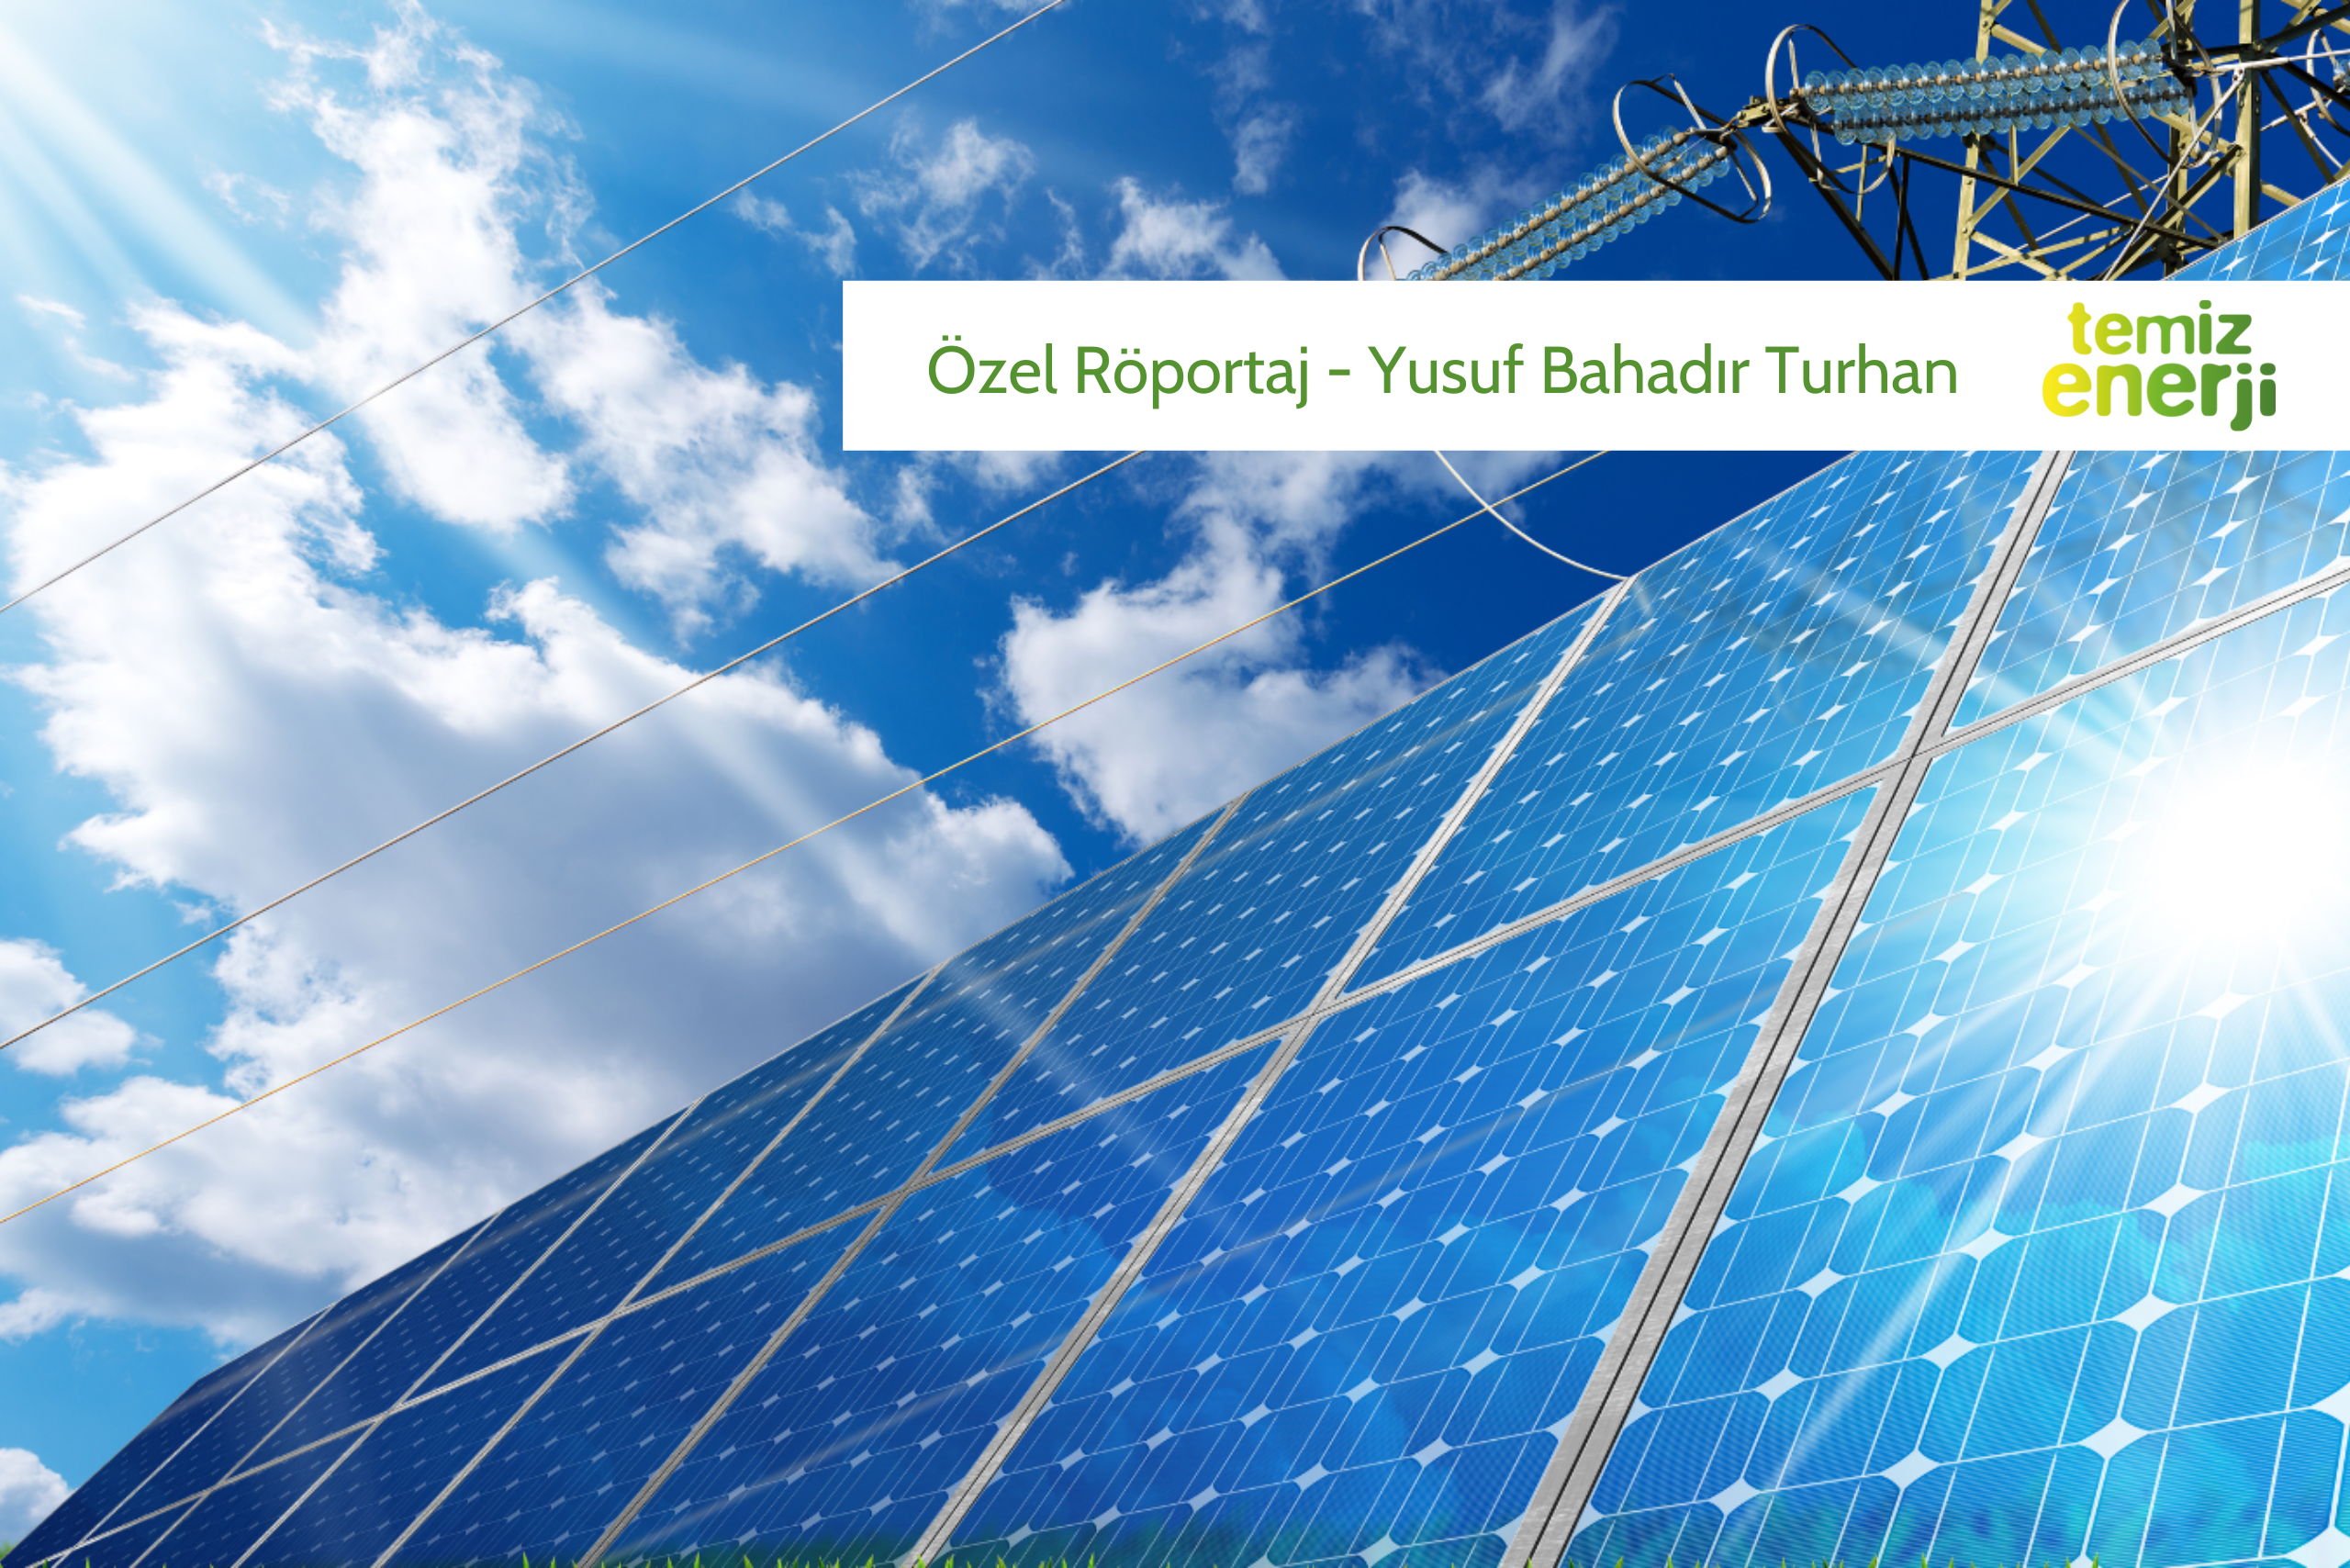 Solar3GW Yönetim Kurulu başkanı Yusuf Bahadır Turhan’ın Temiz Enerji’den Didem Taşbaşı’na röportaj verdi.